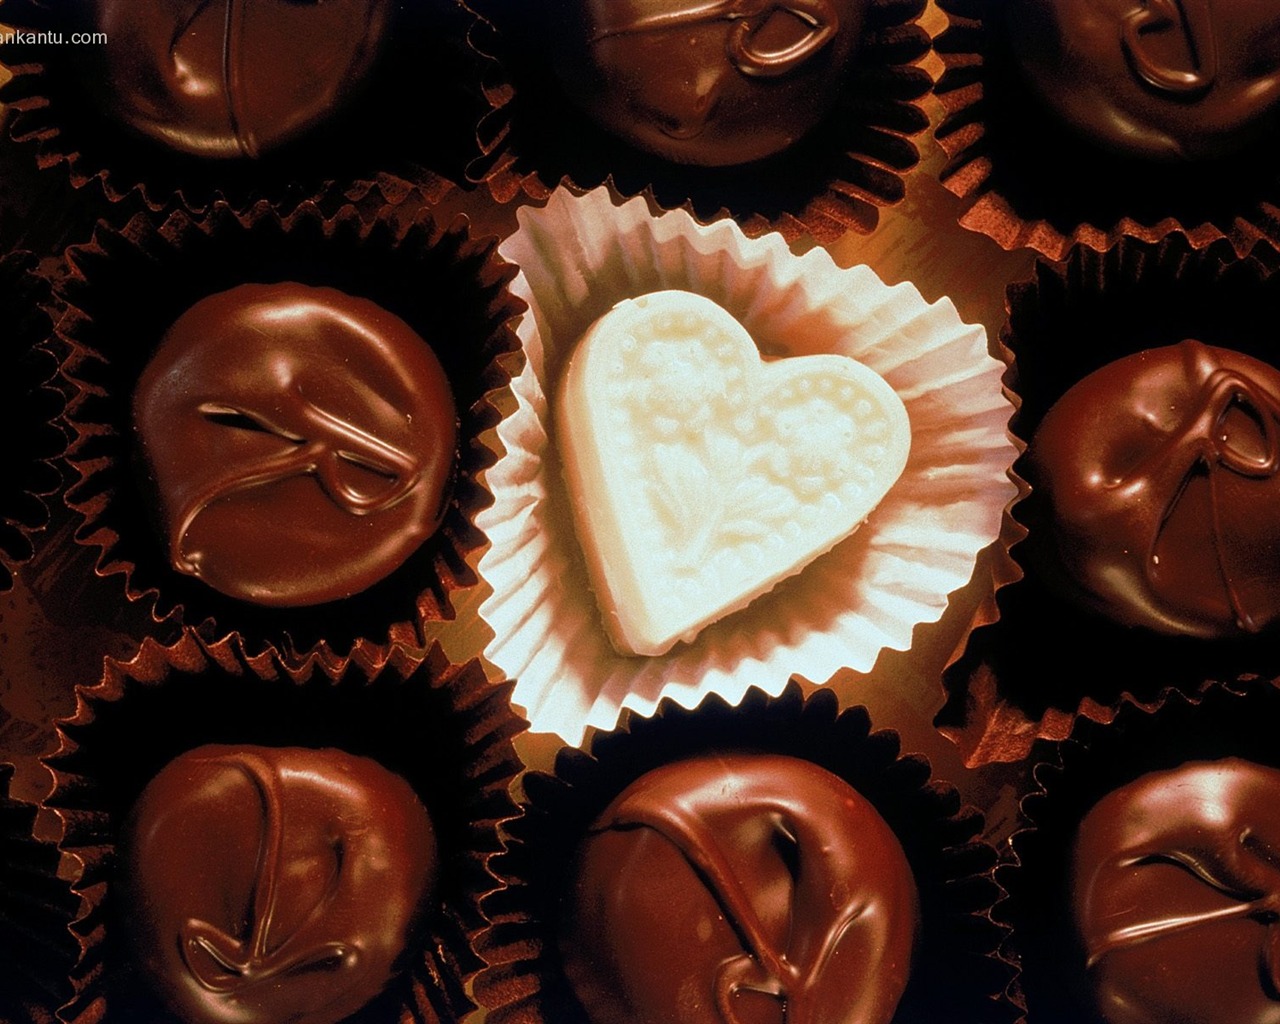 La tinta indeleble Día de San Valentín de chocolate #3 - 1280x1024